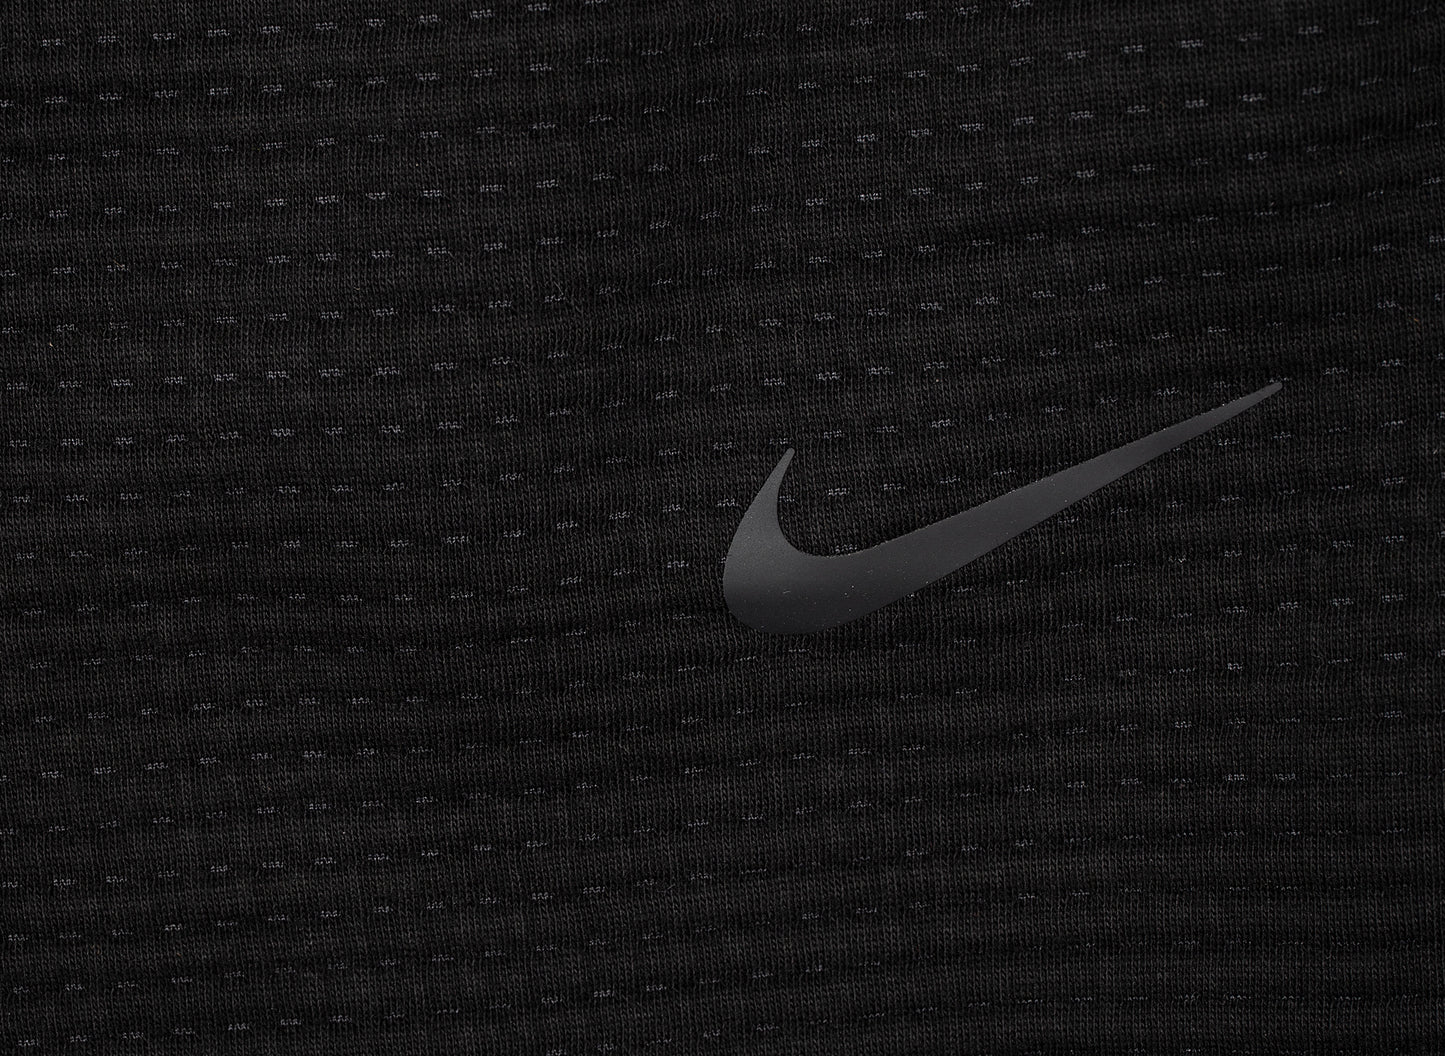 Nike Sportswear Tech Pack Men's Engineered Trousers